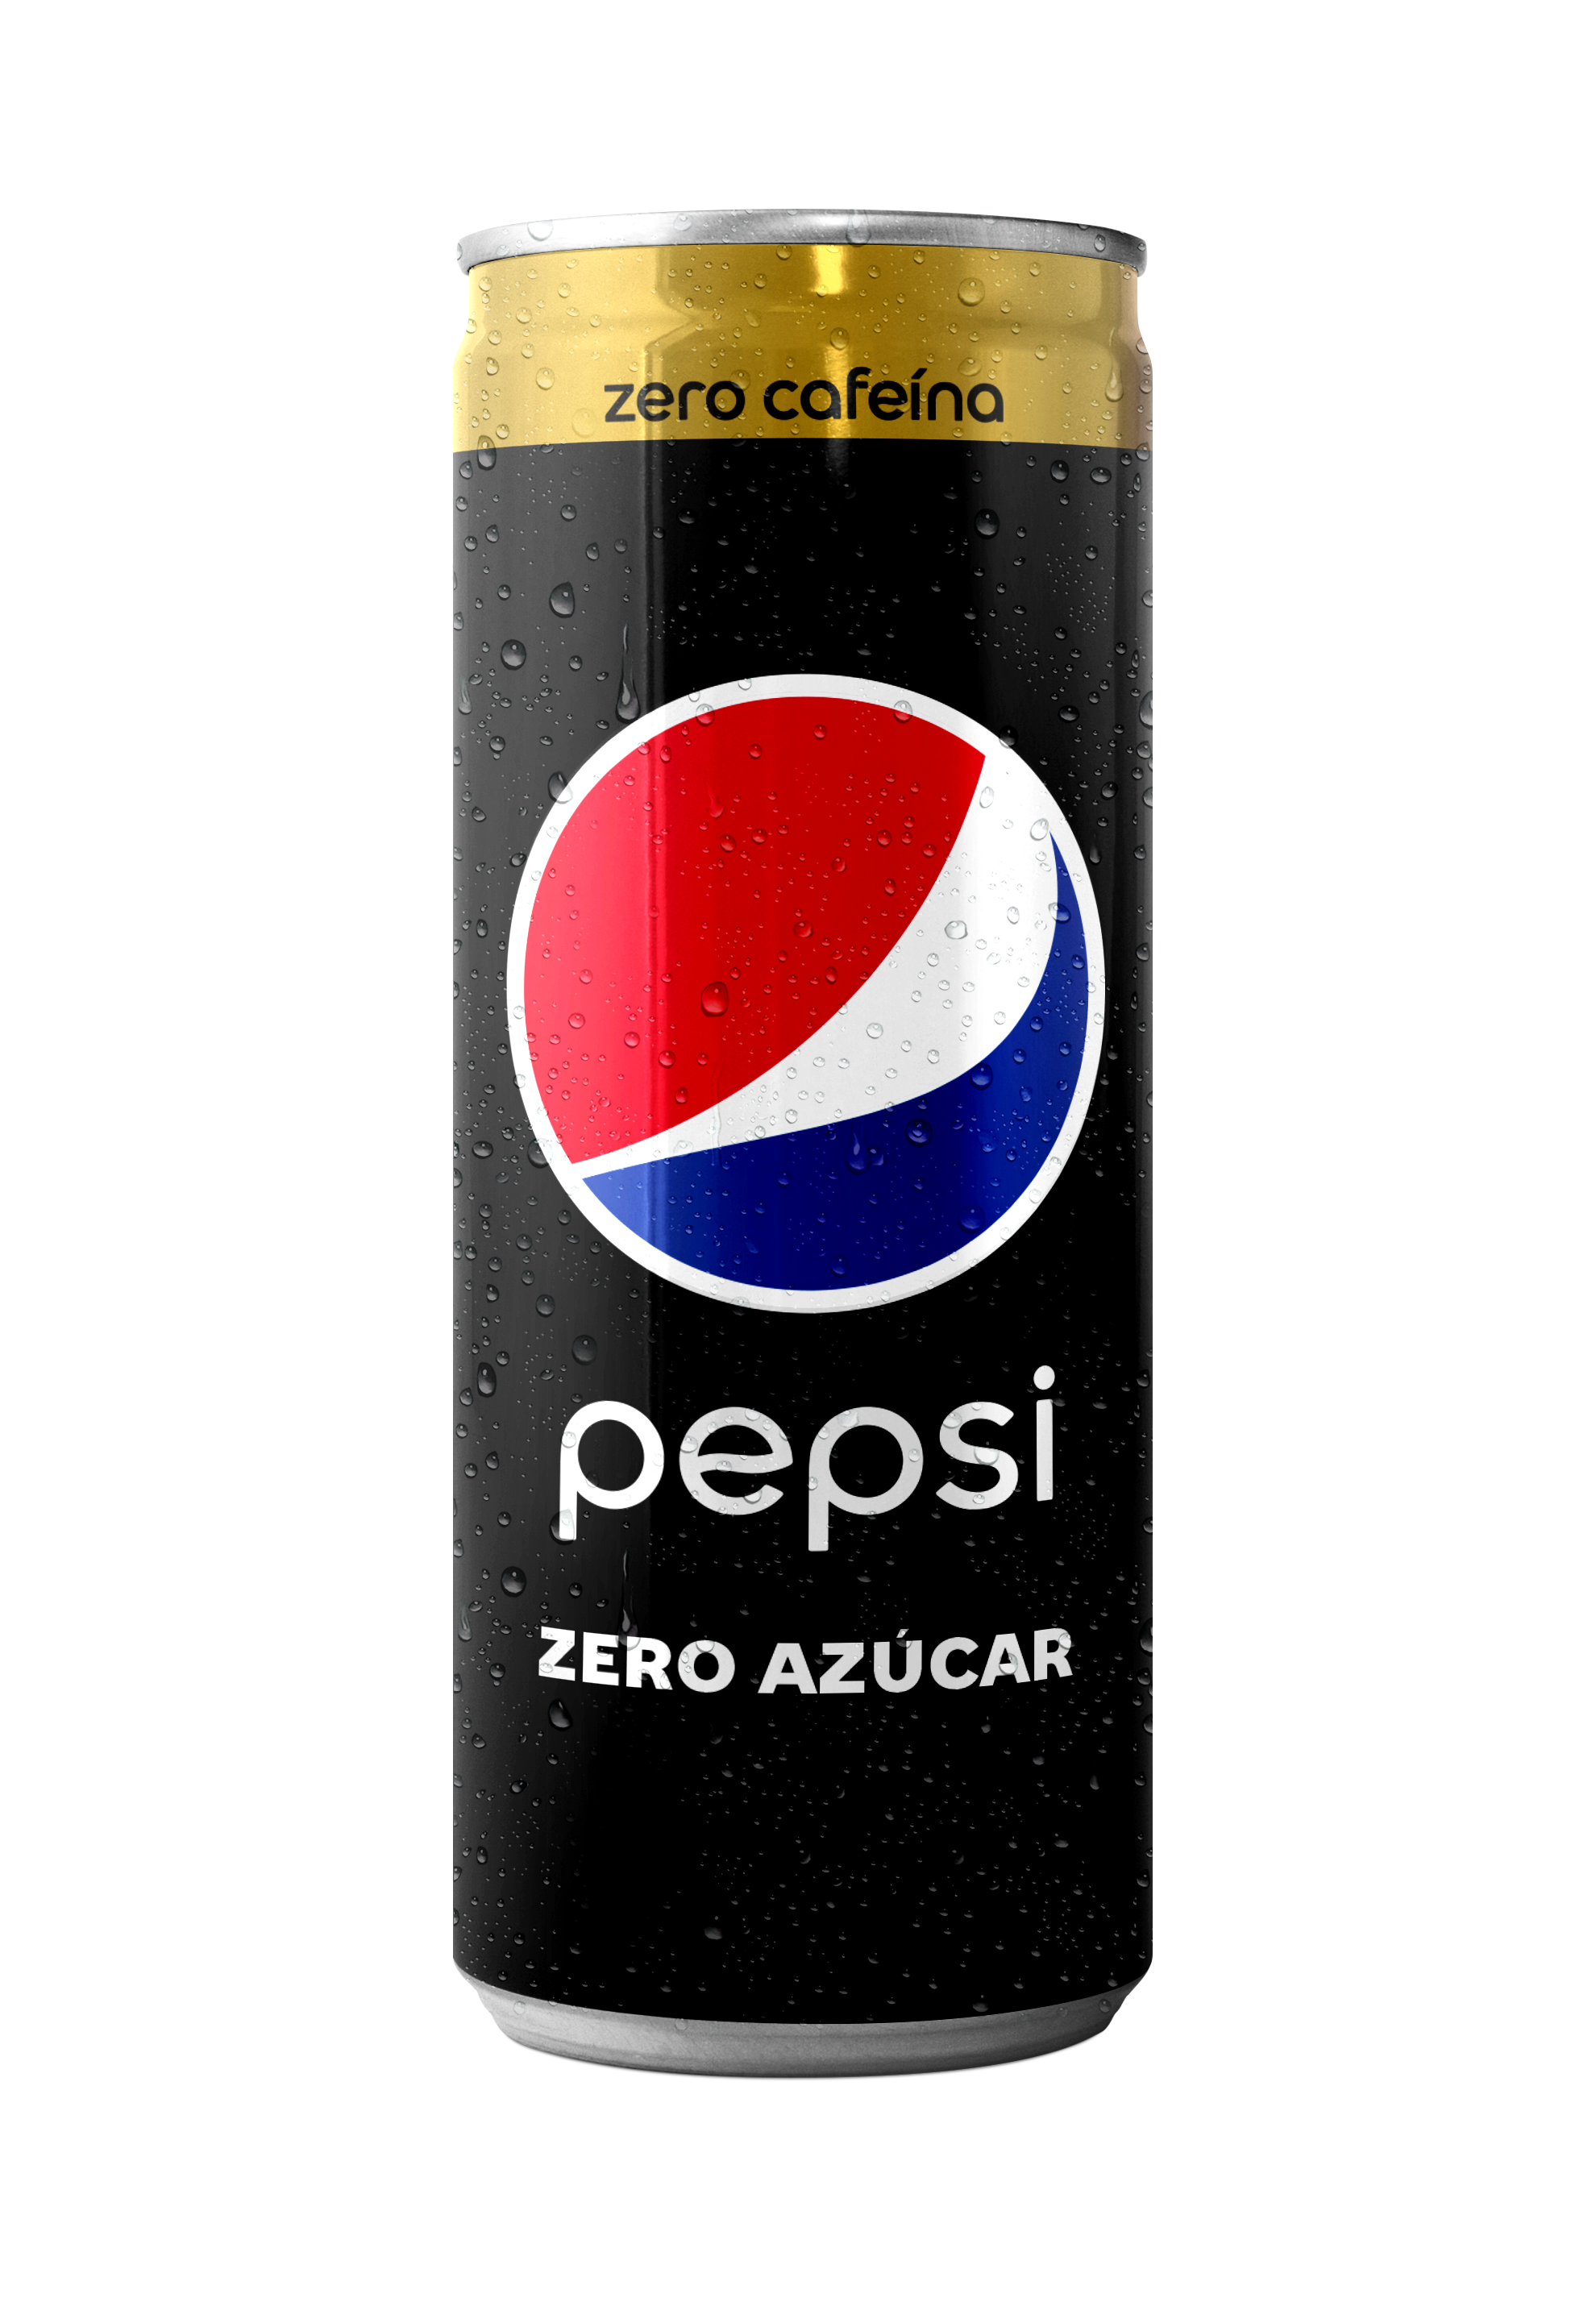 Pepsi zero cafeina